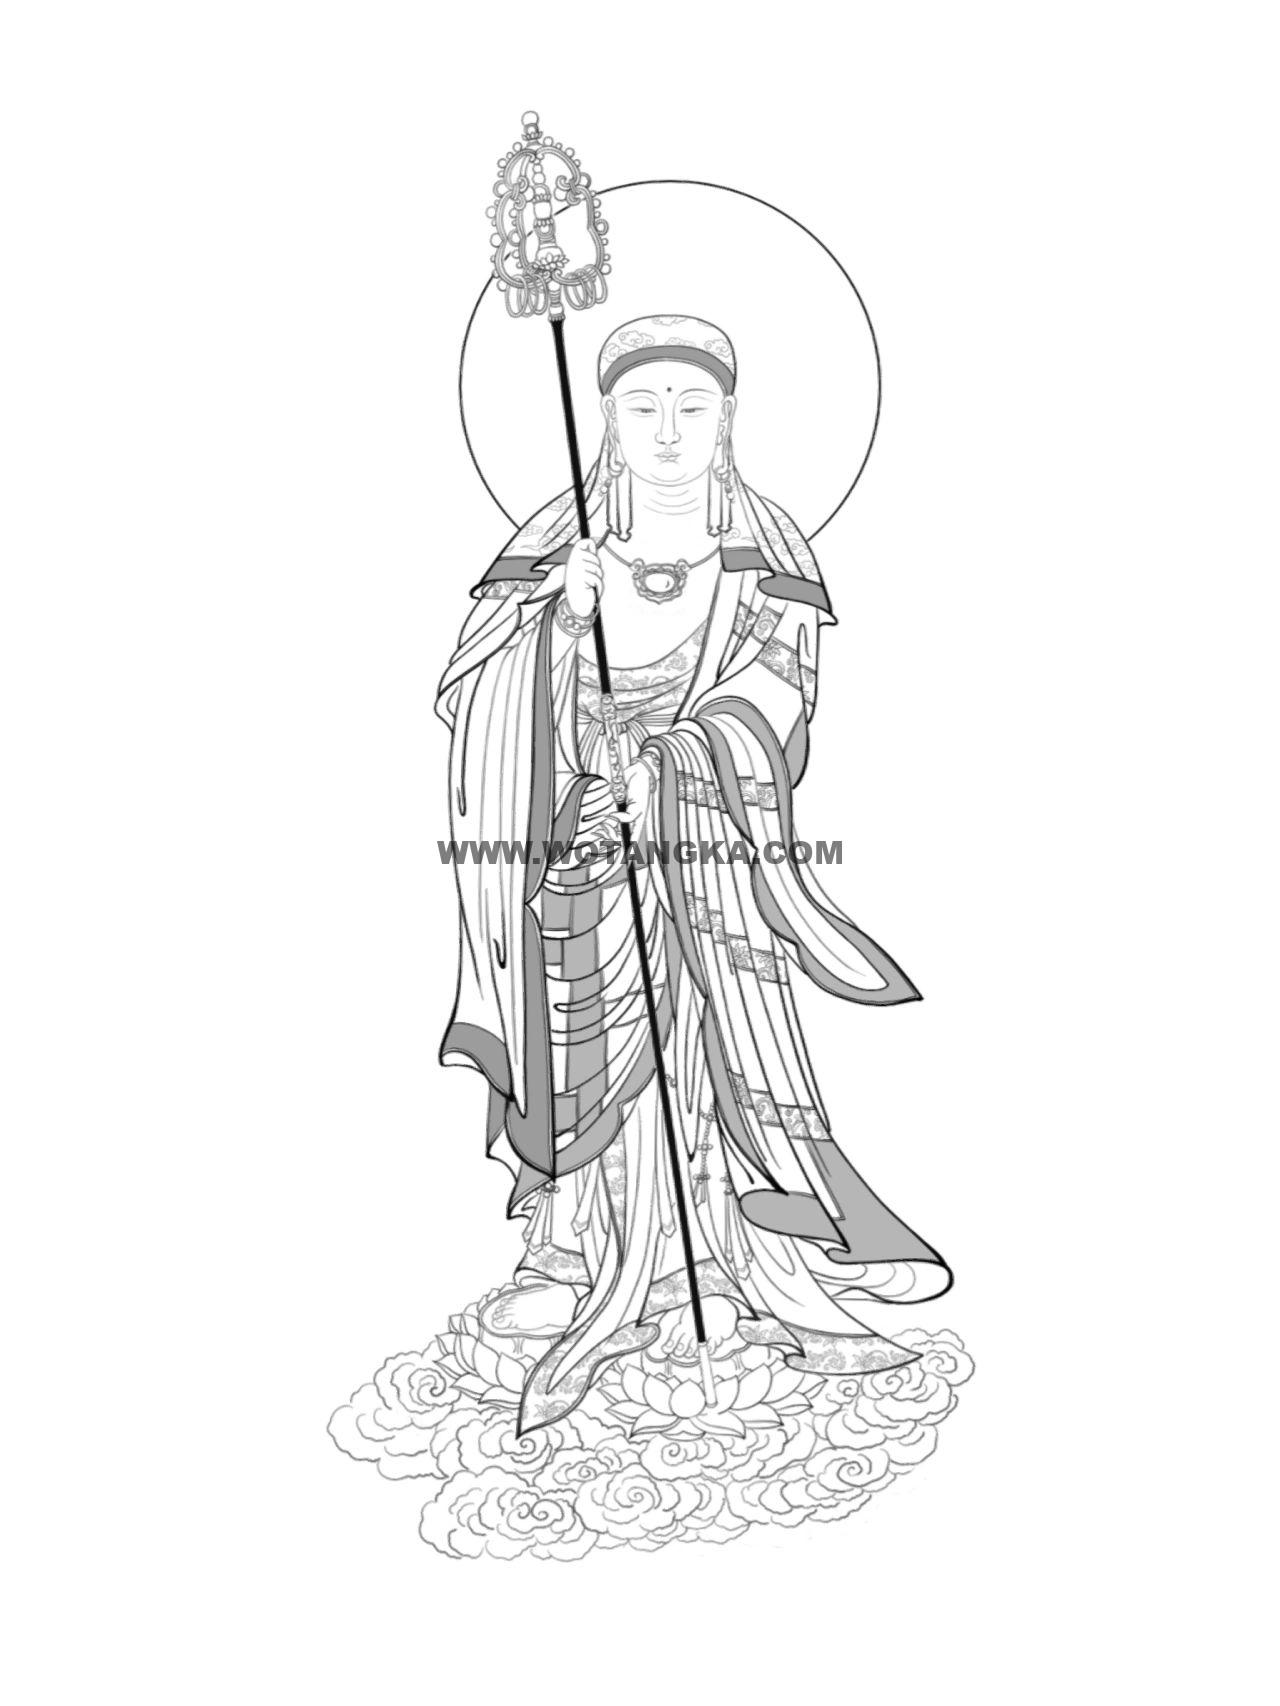 沃唐卡-唐卡白描线稿编号RD31398：地藏王菩萨